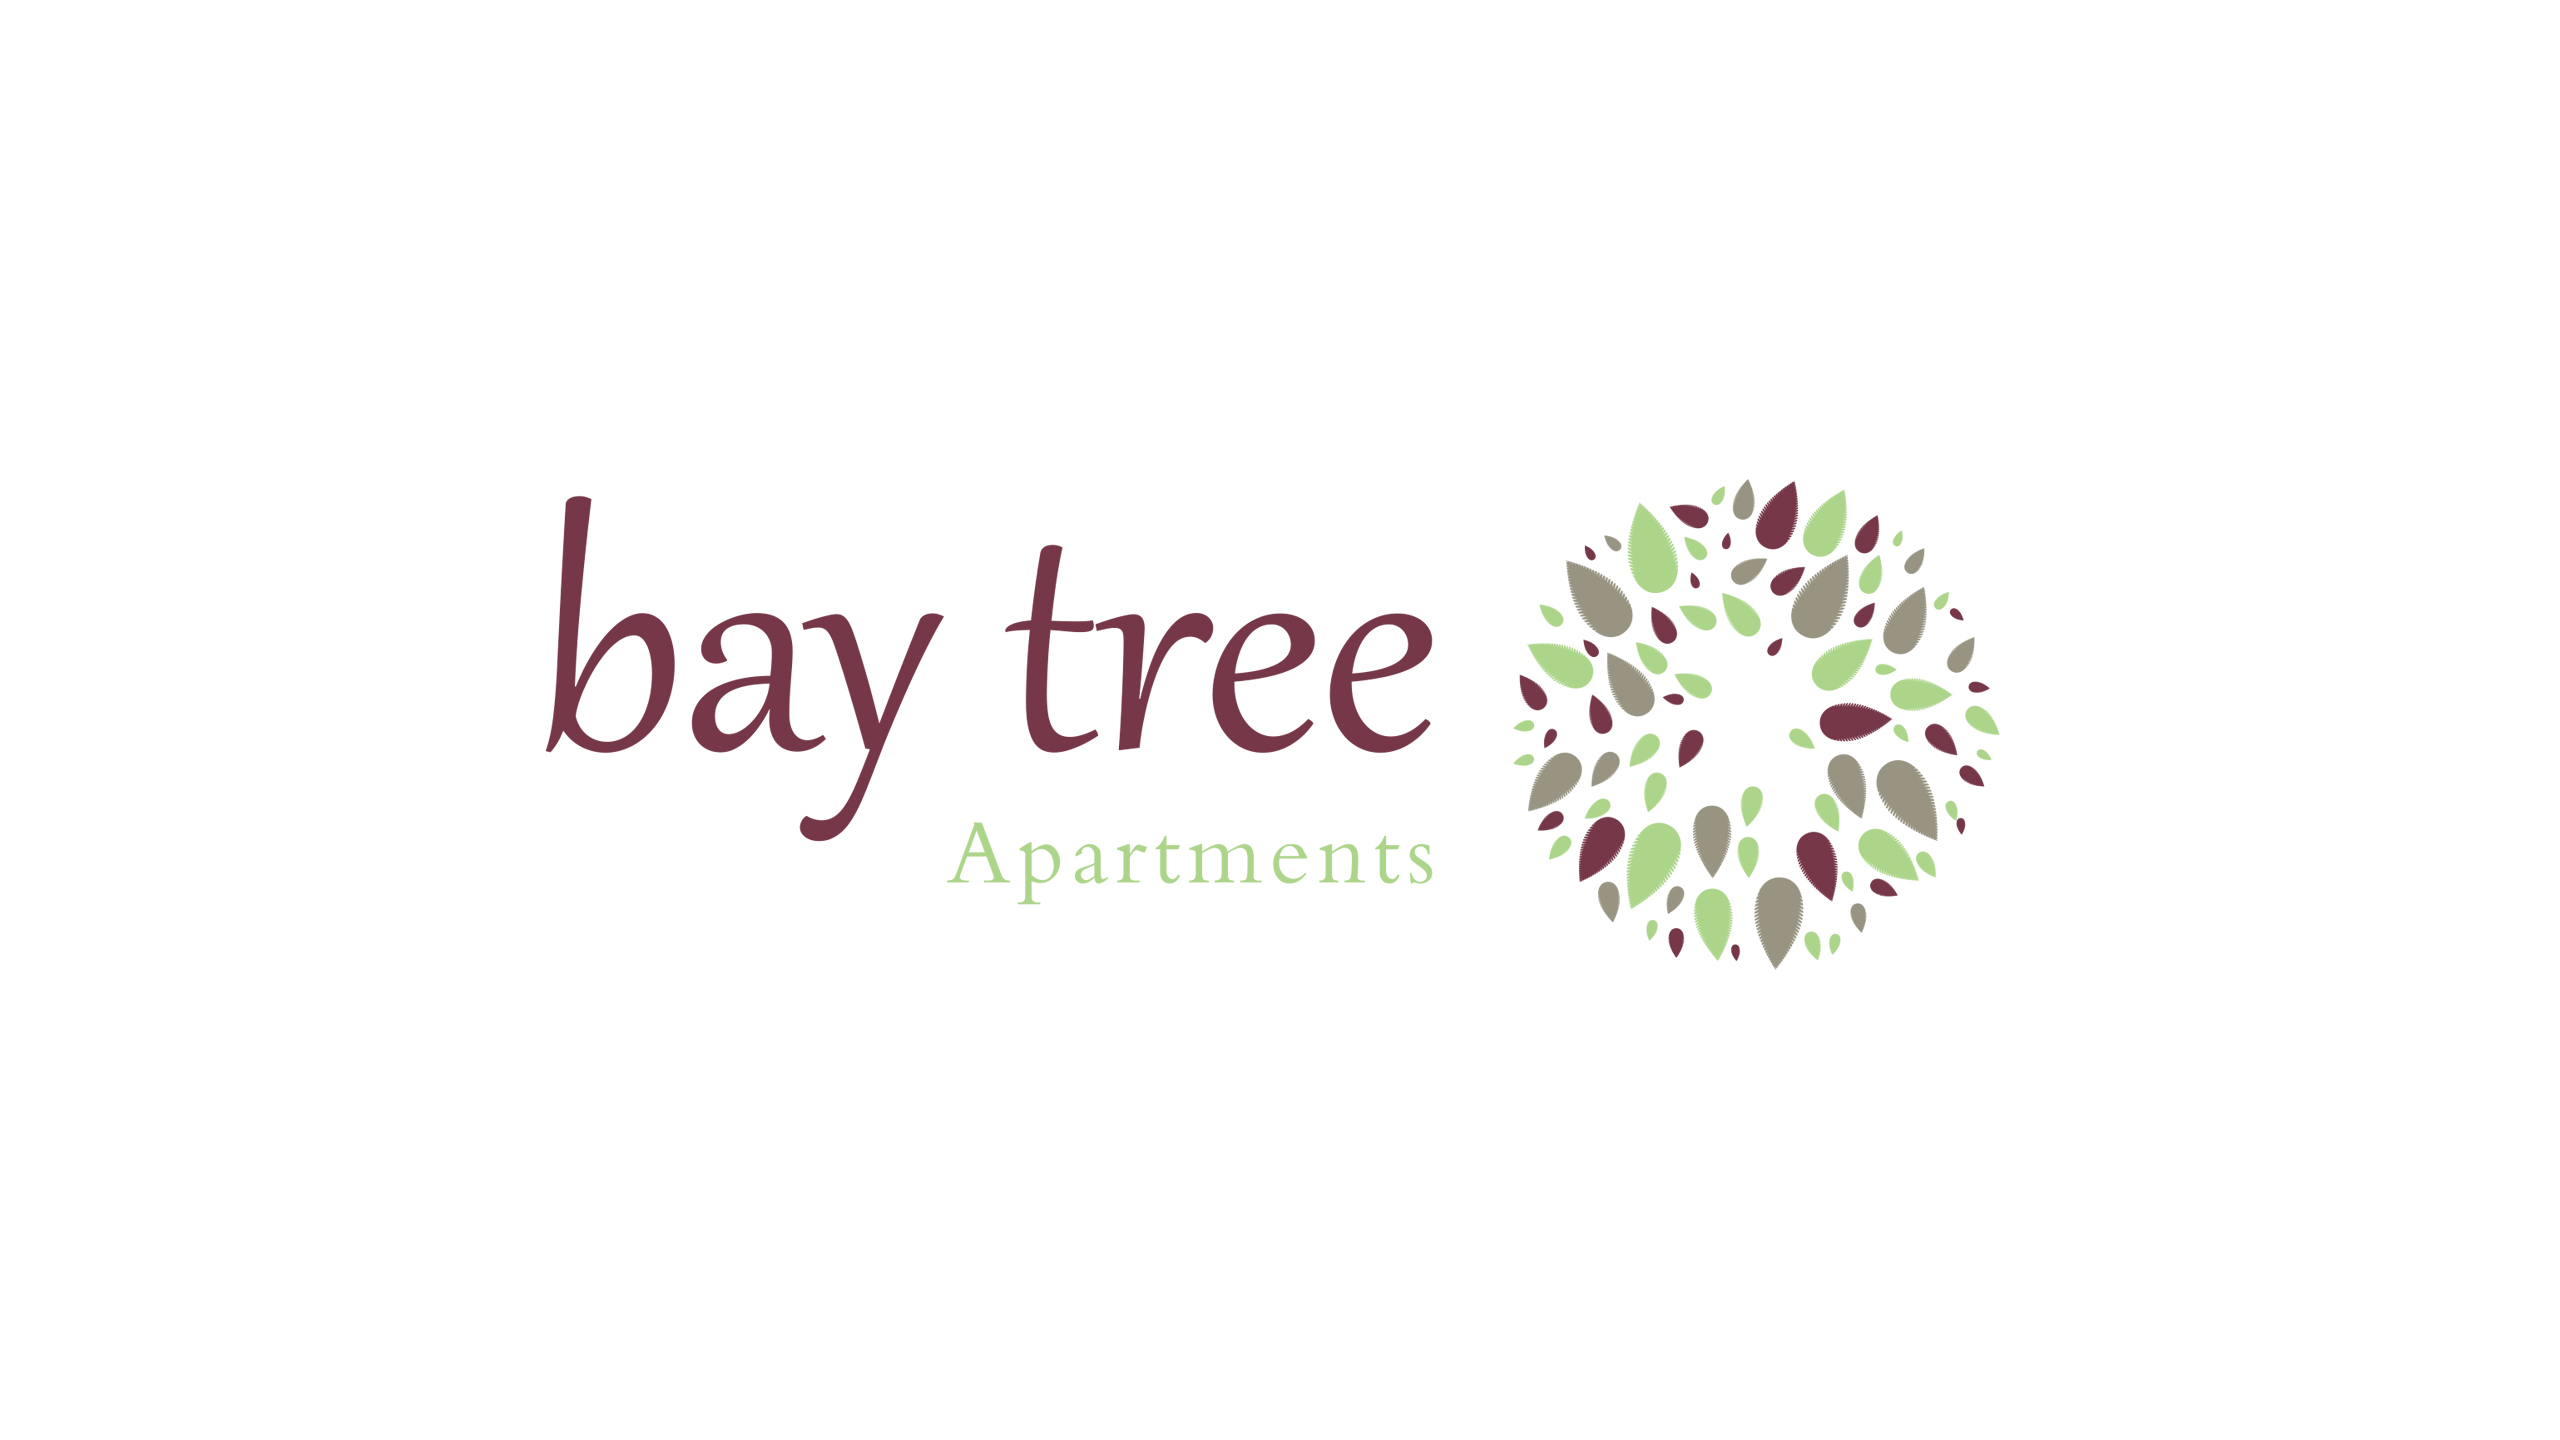 BAY TREE APARTMENTS